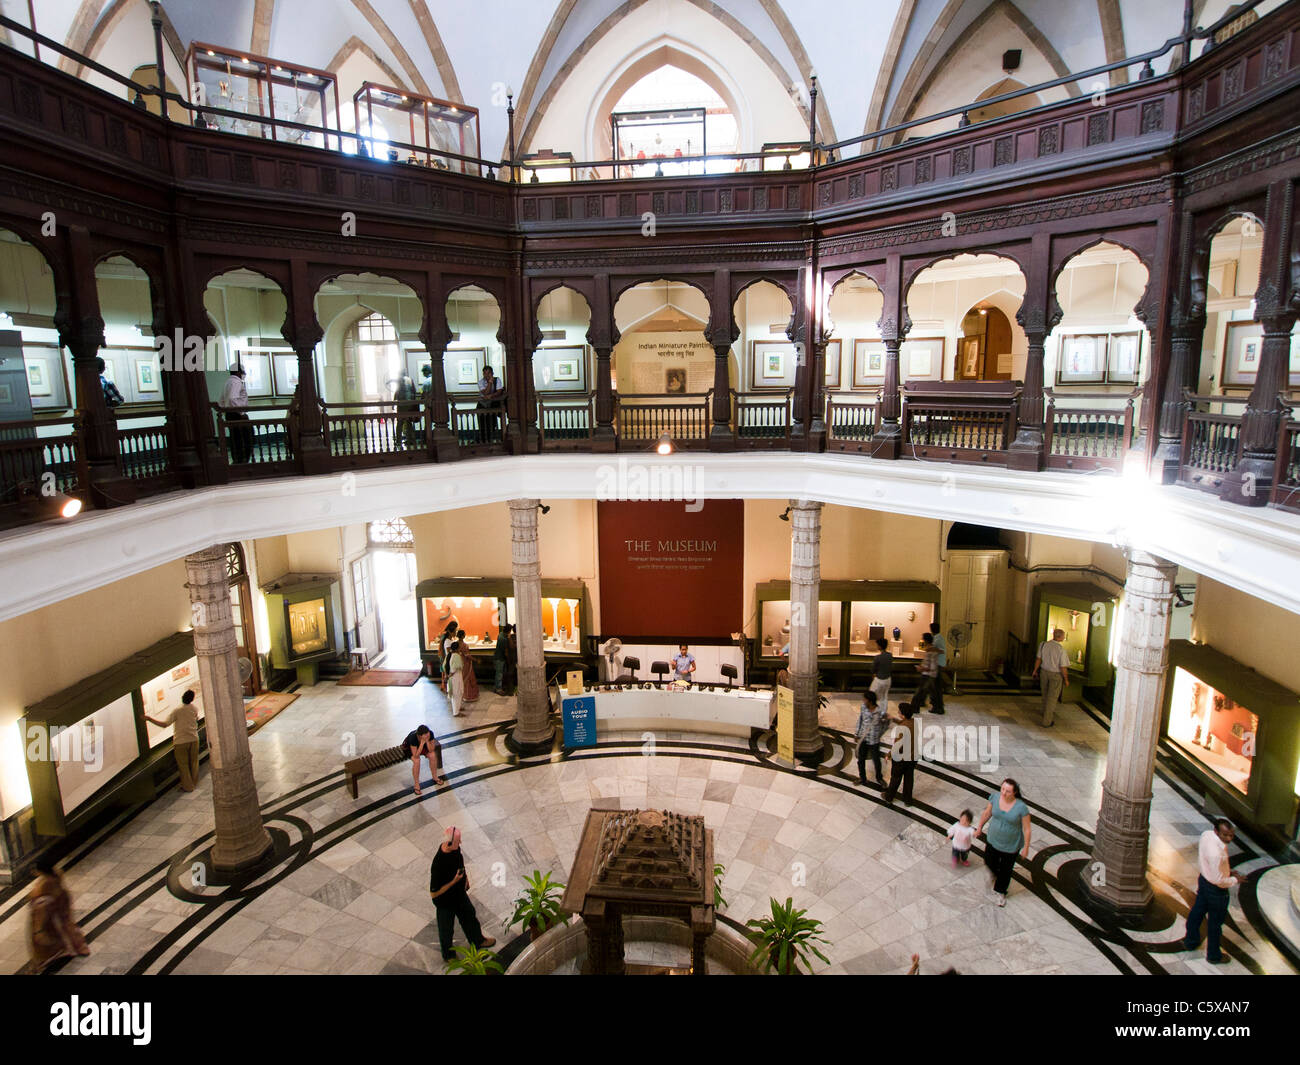 The main entrance hall inside the Chhatrapati Shivaji Maharaj ...